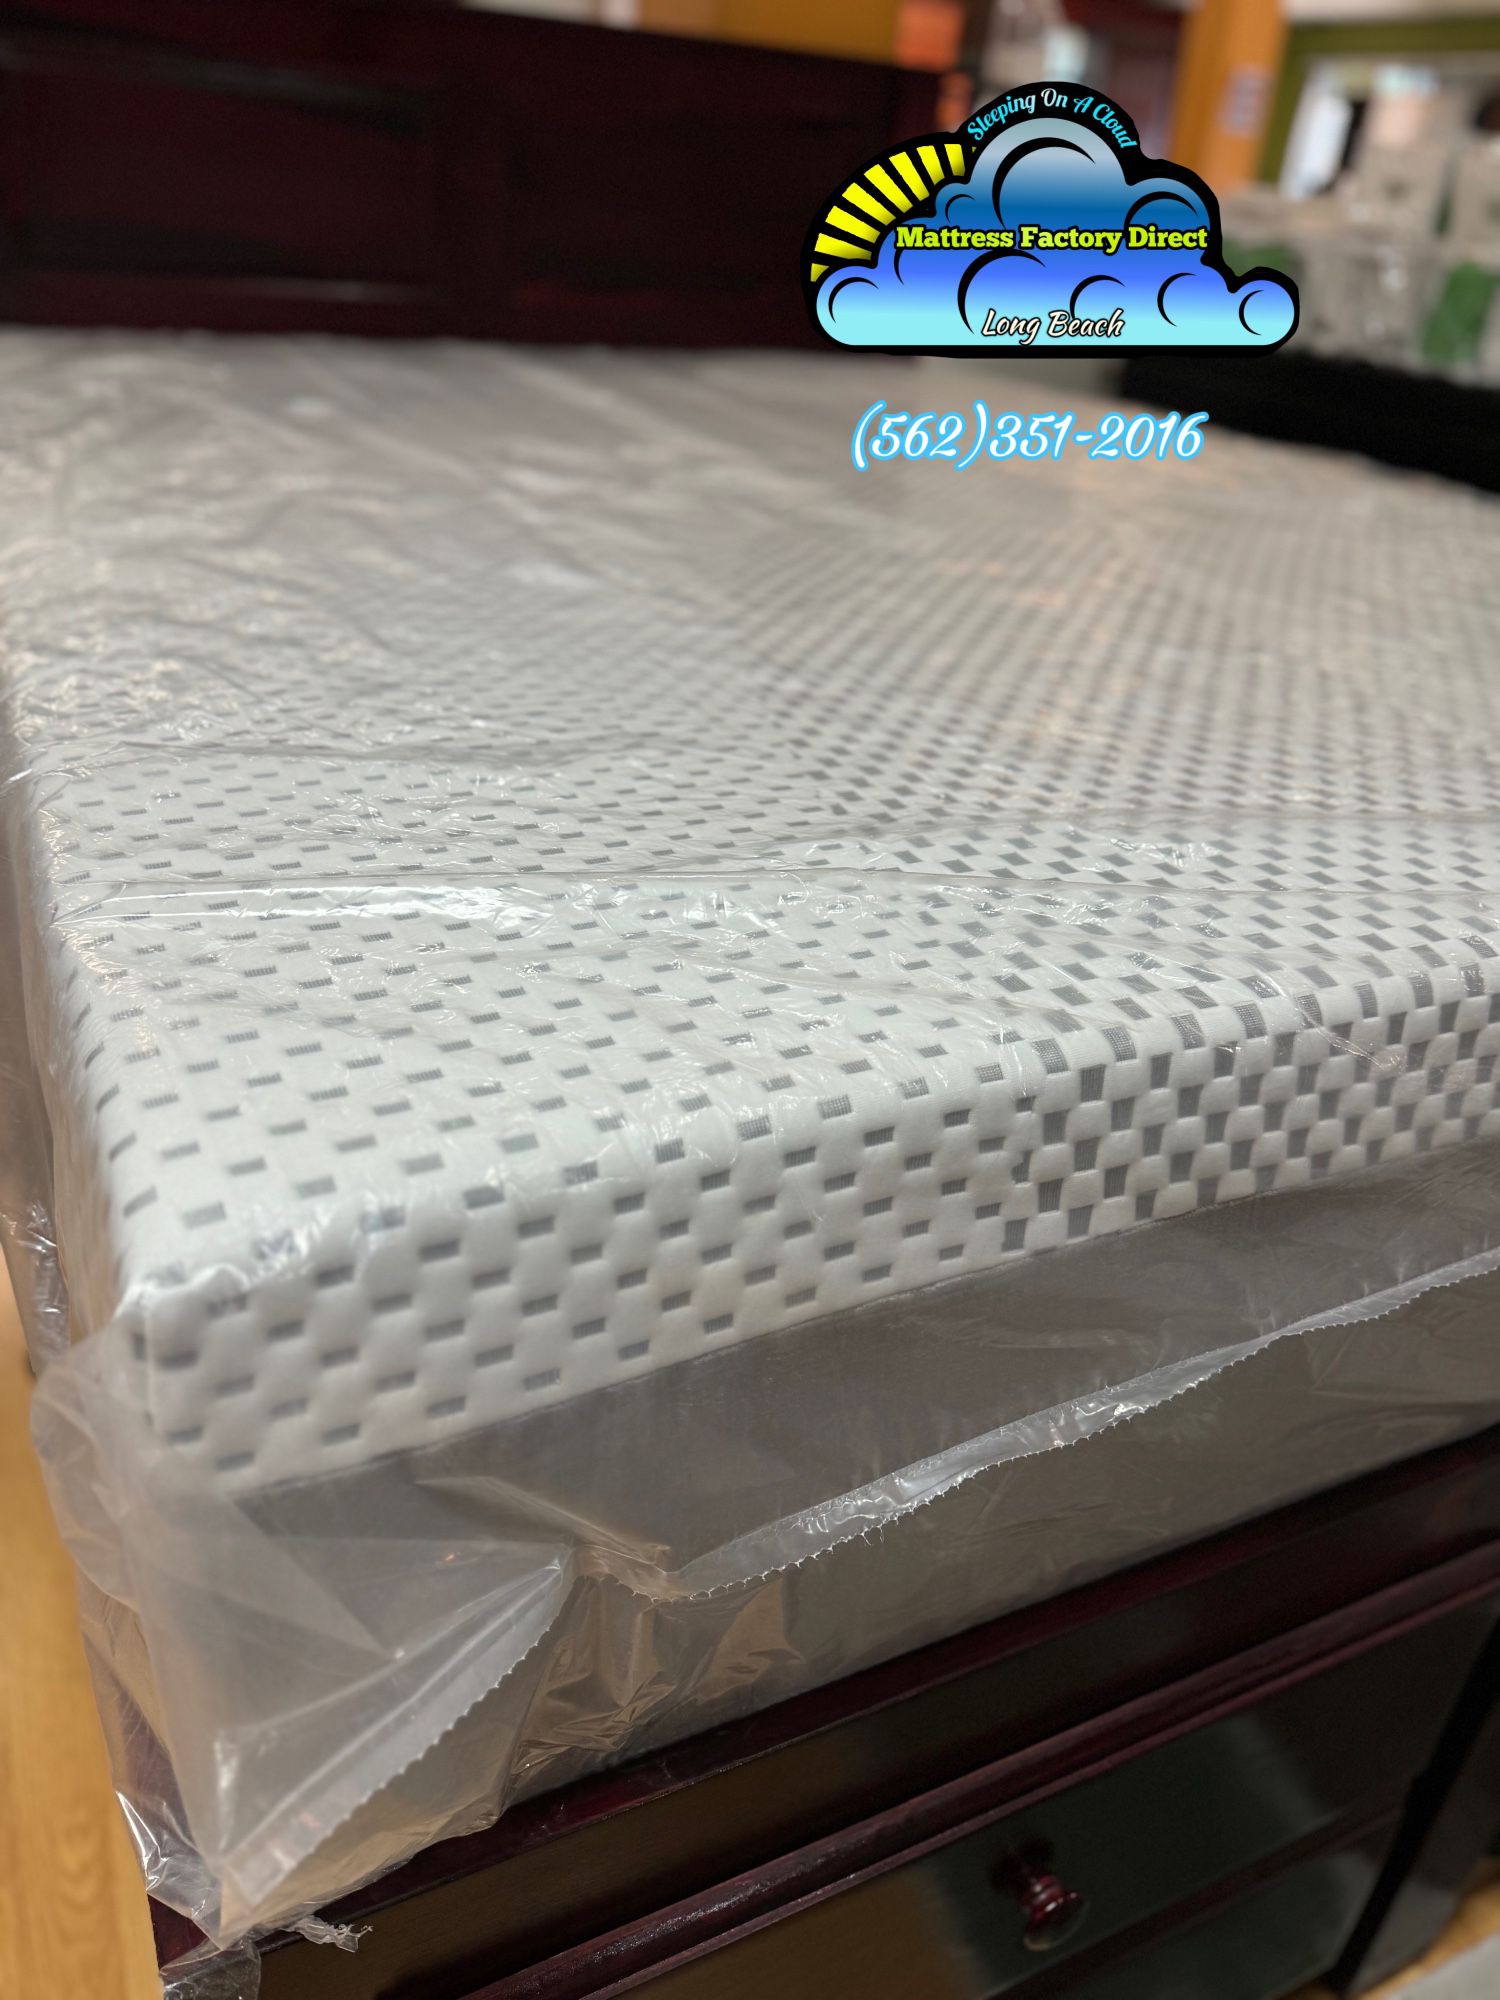 New Queen Extra Firm Memory Foam Mattress 12” Thick 